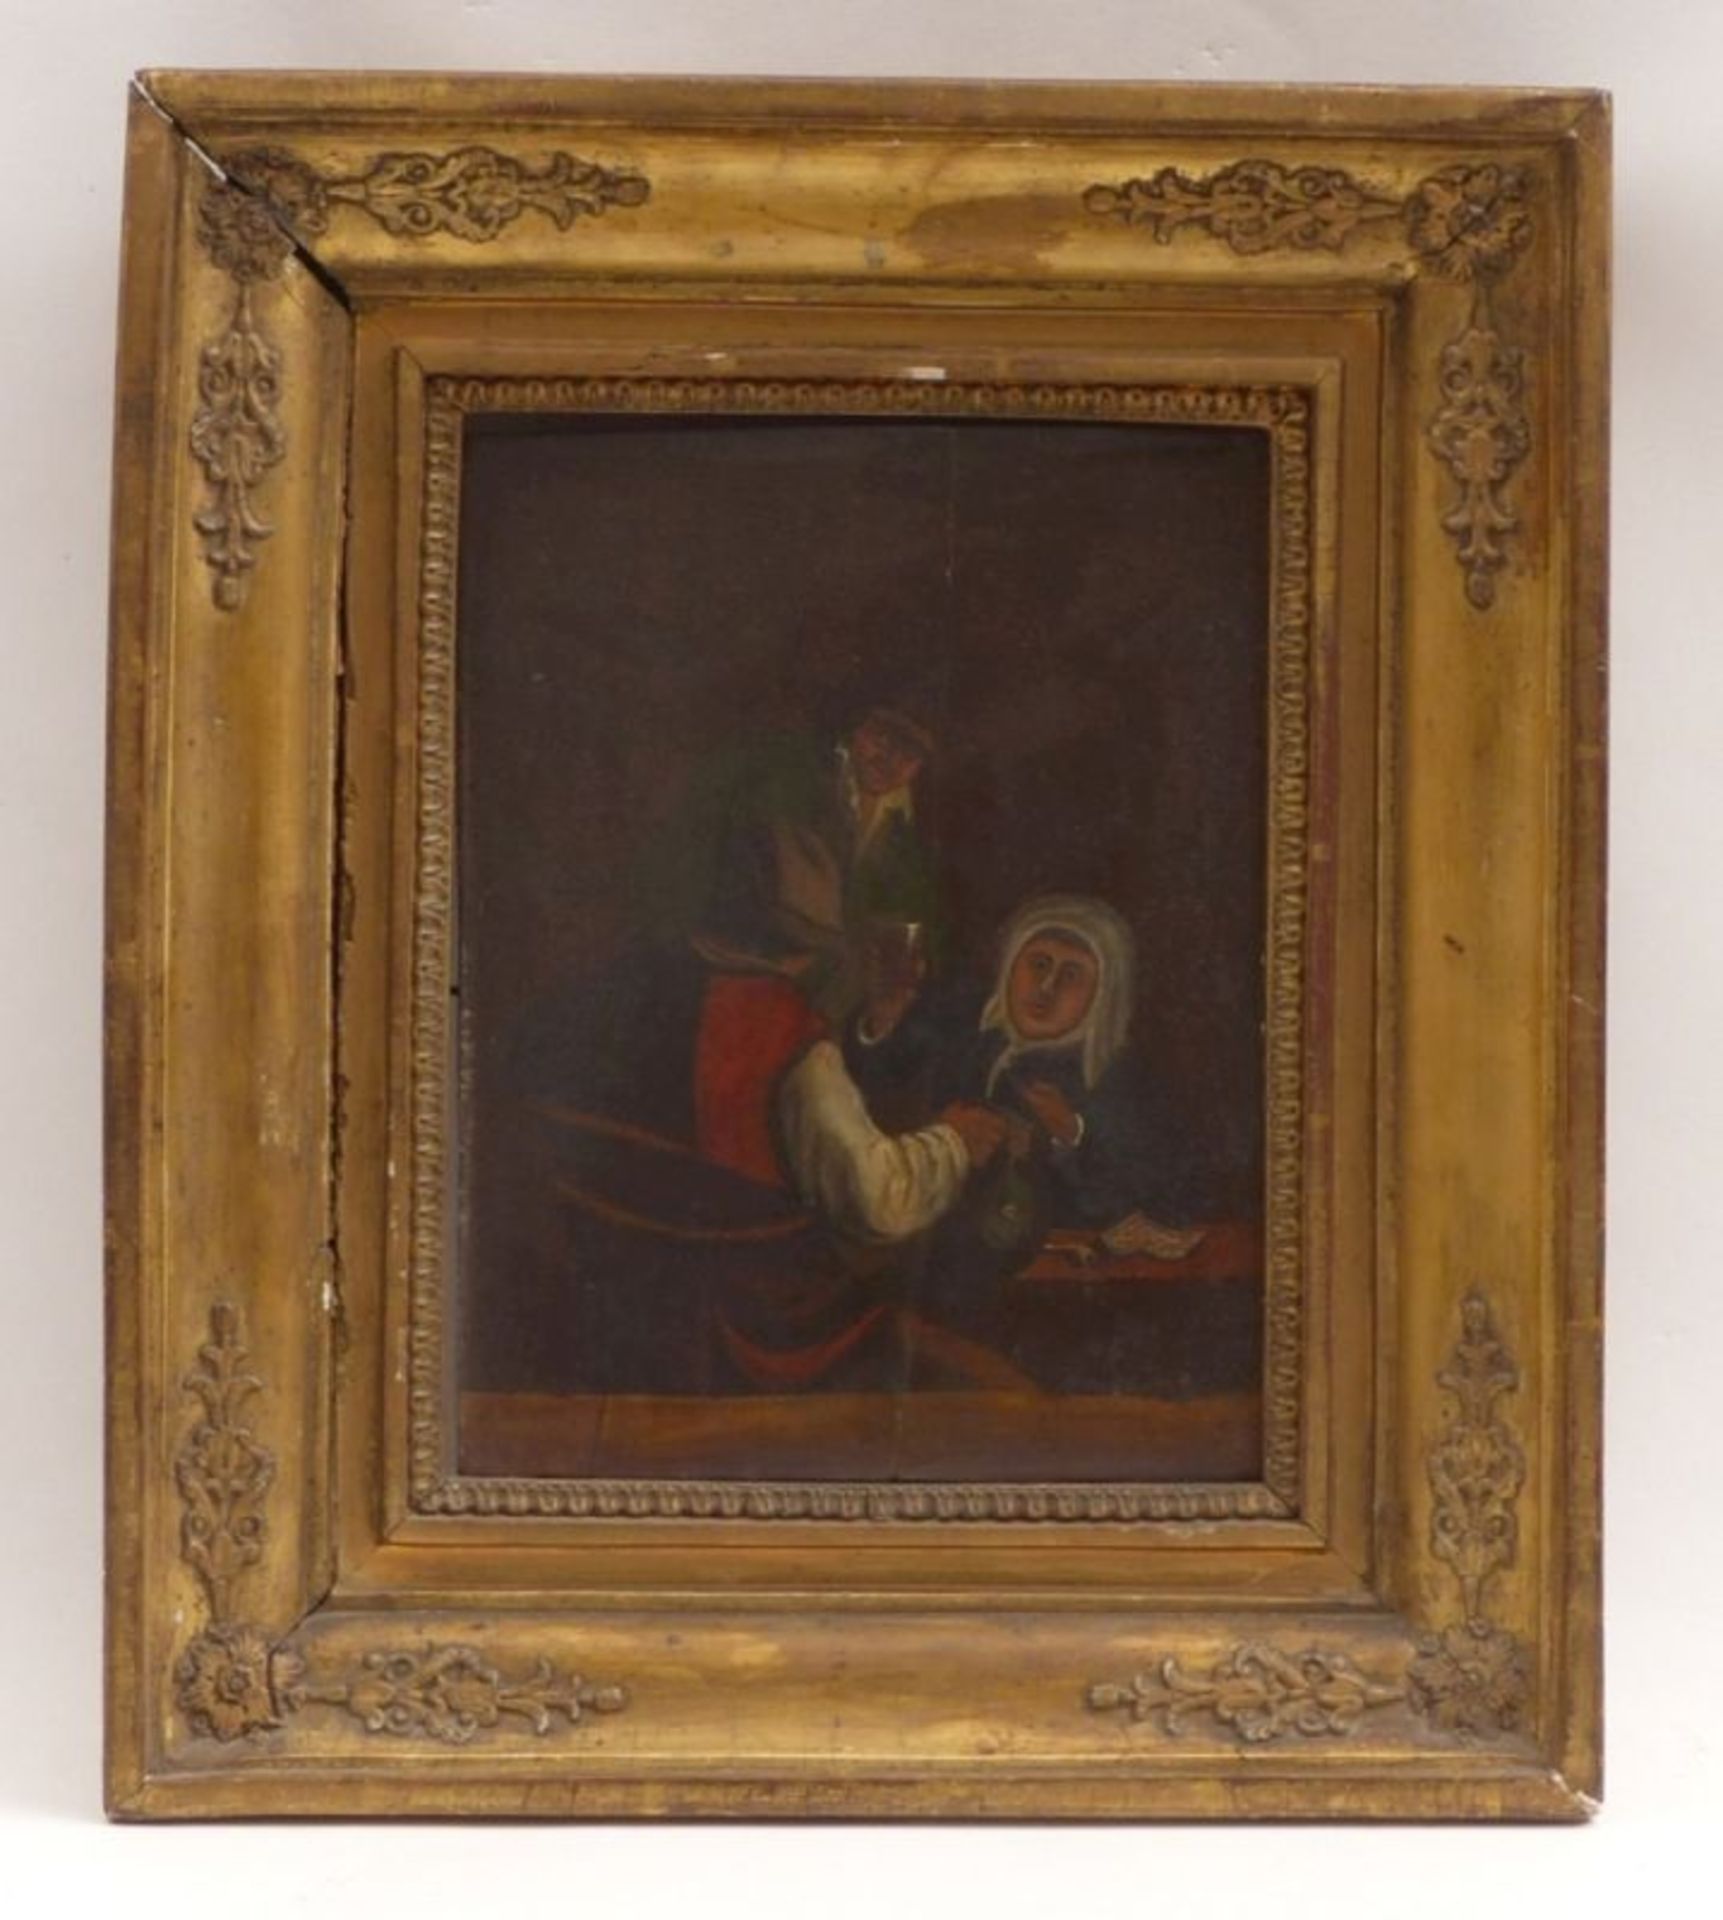 Unbekannter Maler des fr. 18. JahrhundertsDrei Zecher am WirtshaustischUm 1700. Öl/Holz. 25 x 20,3 - Image 2 of 4